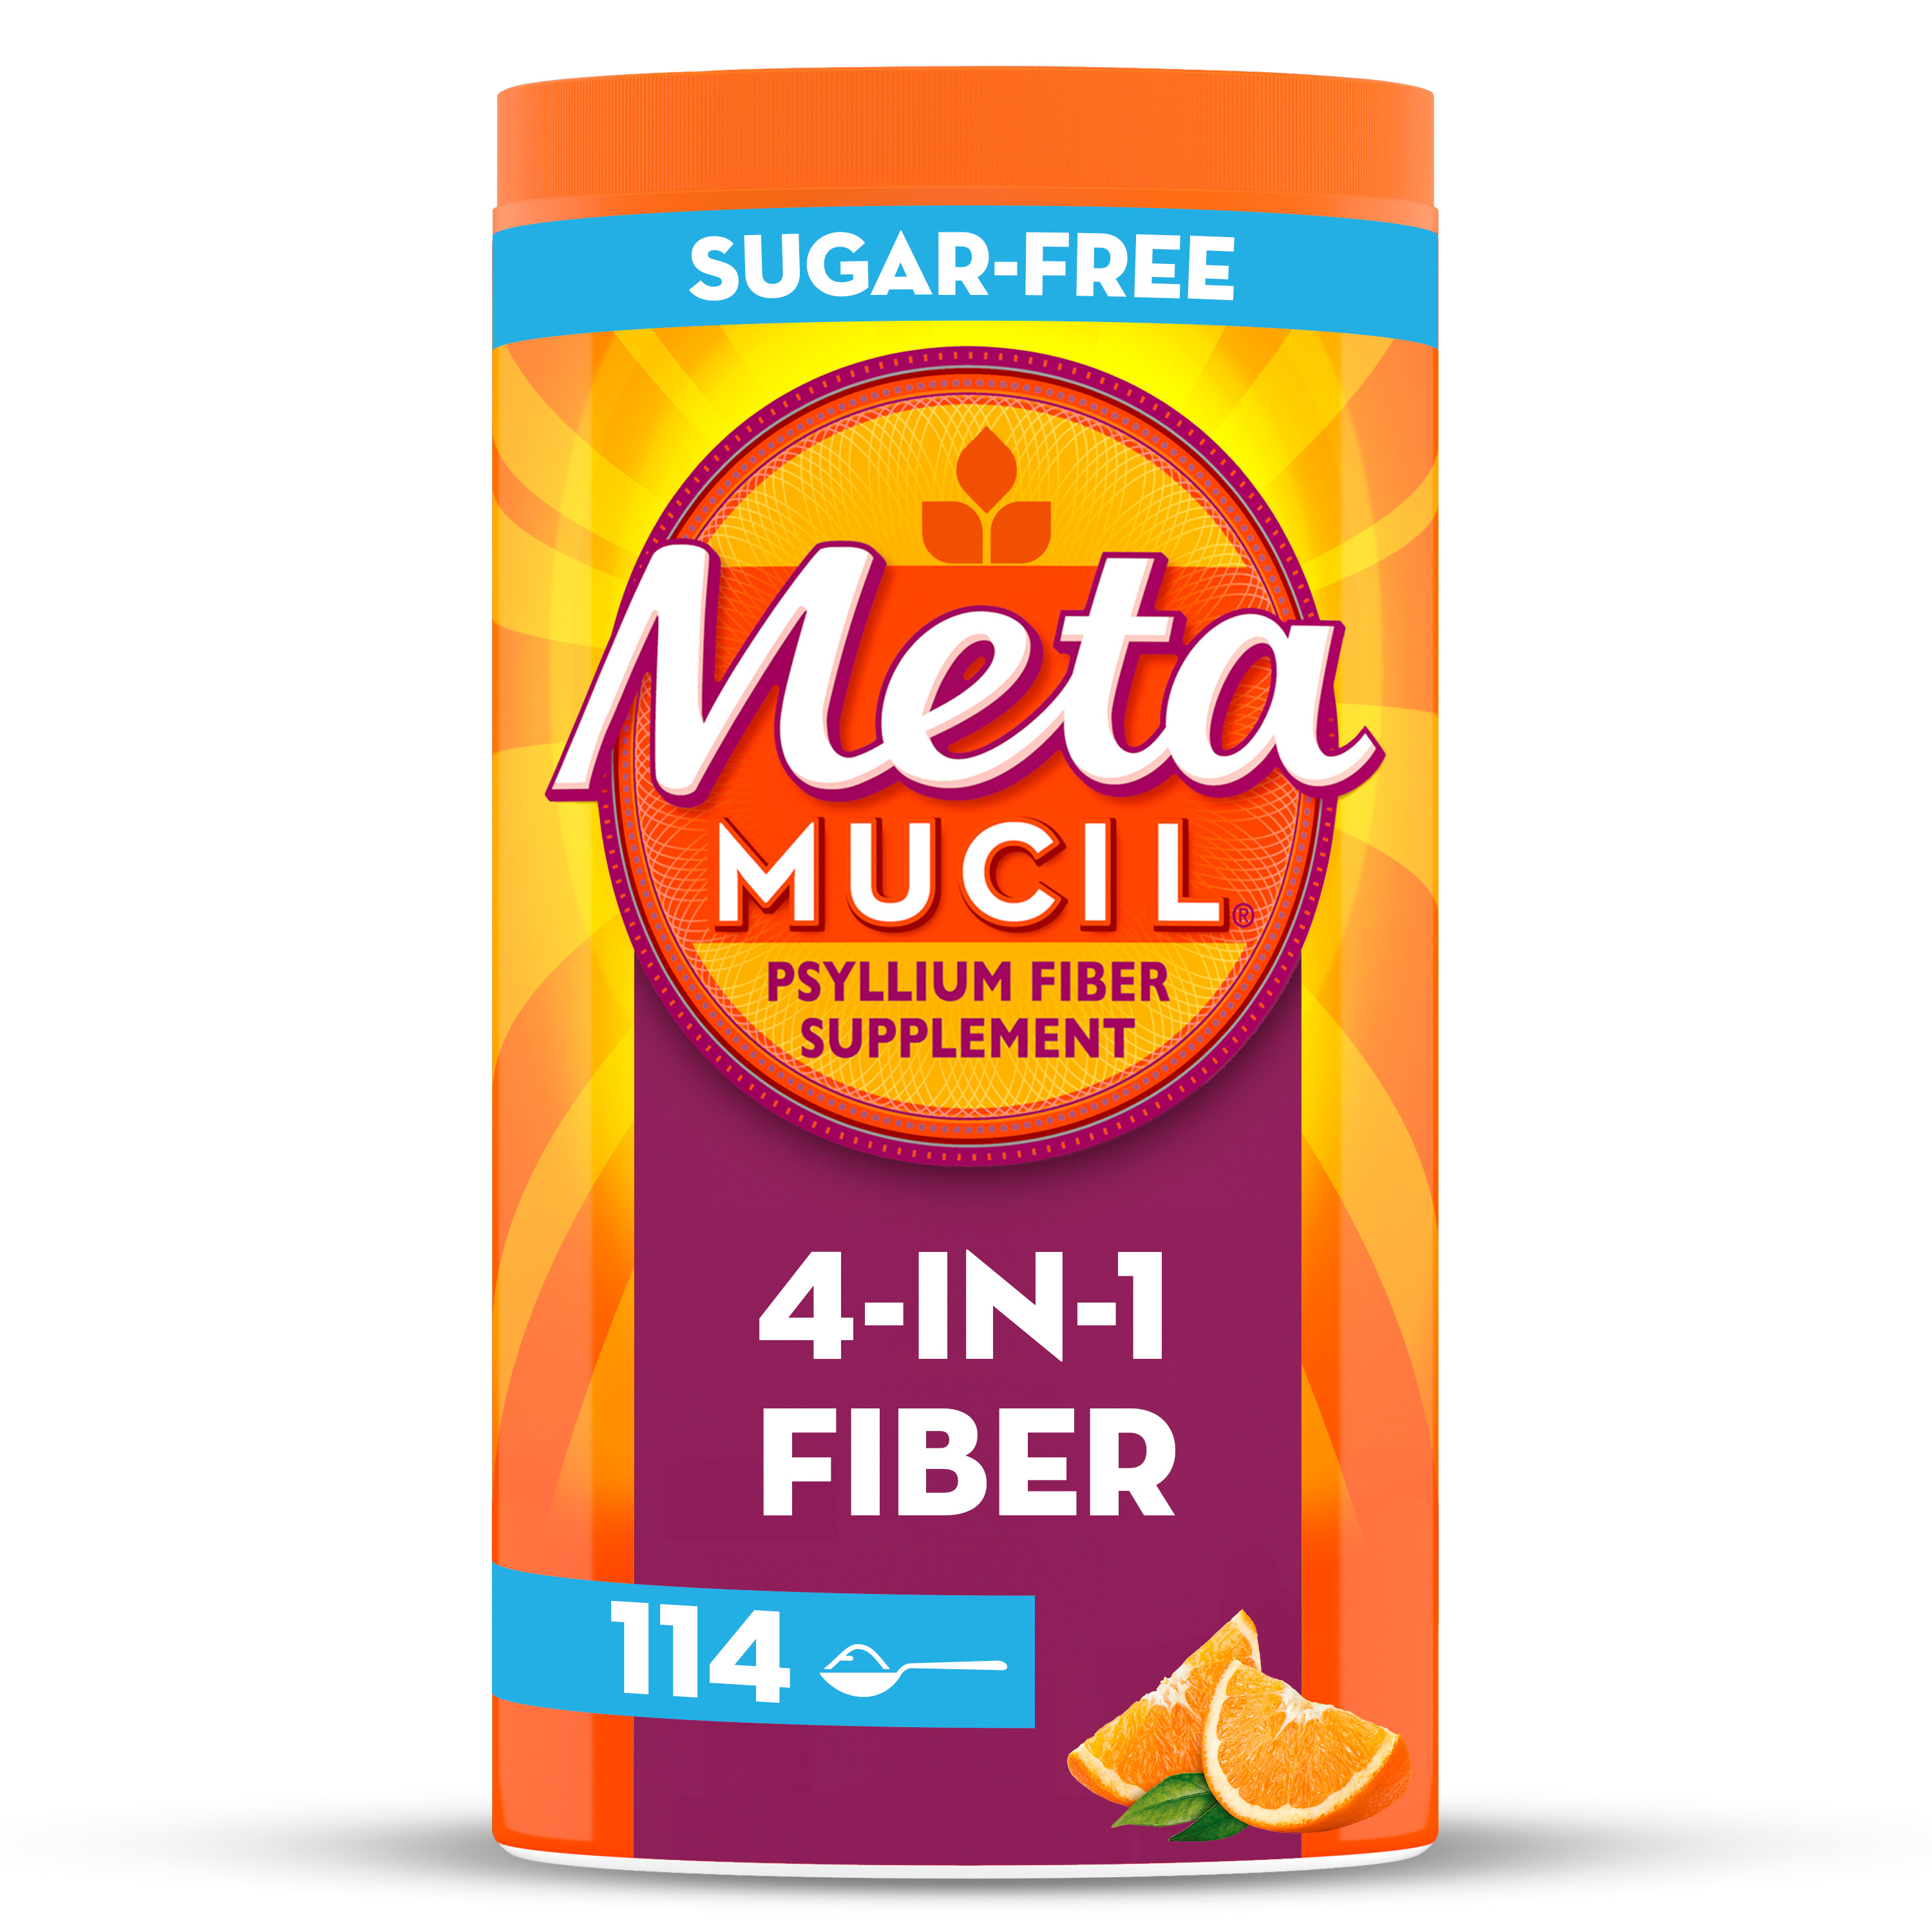 Metamucil Psyllium Husk Fiber Supplement for Digestive Health, Sugar Free, Orange, 114 Servings - image 1 of 8